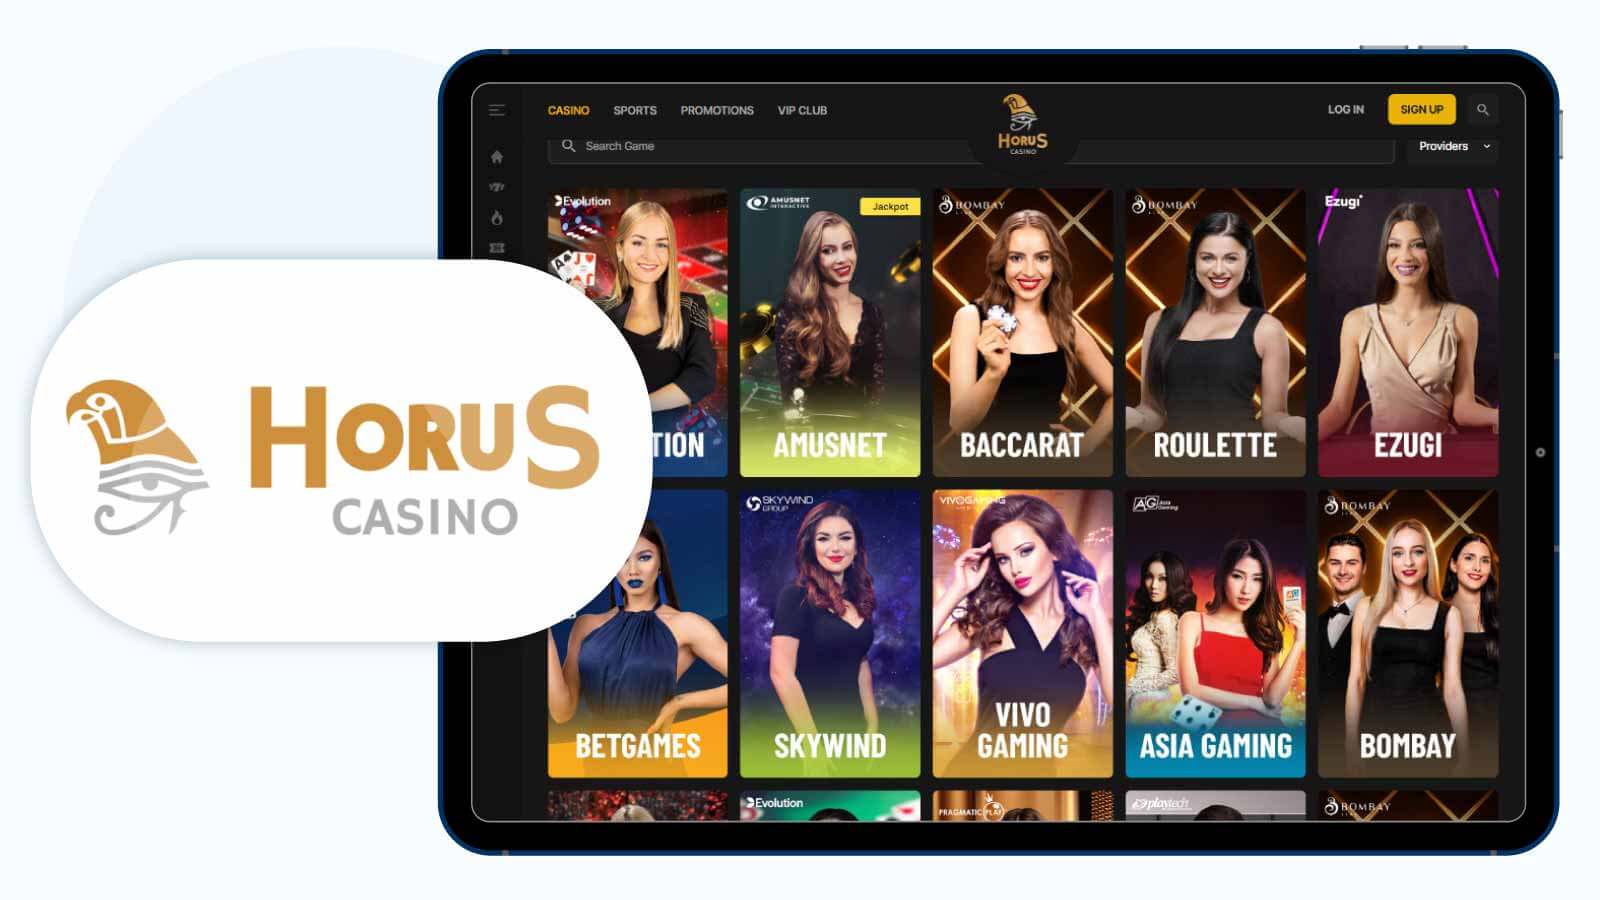 Horus Casino 300% bonus casino for live dealers